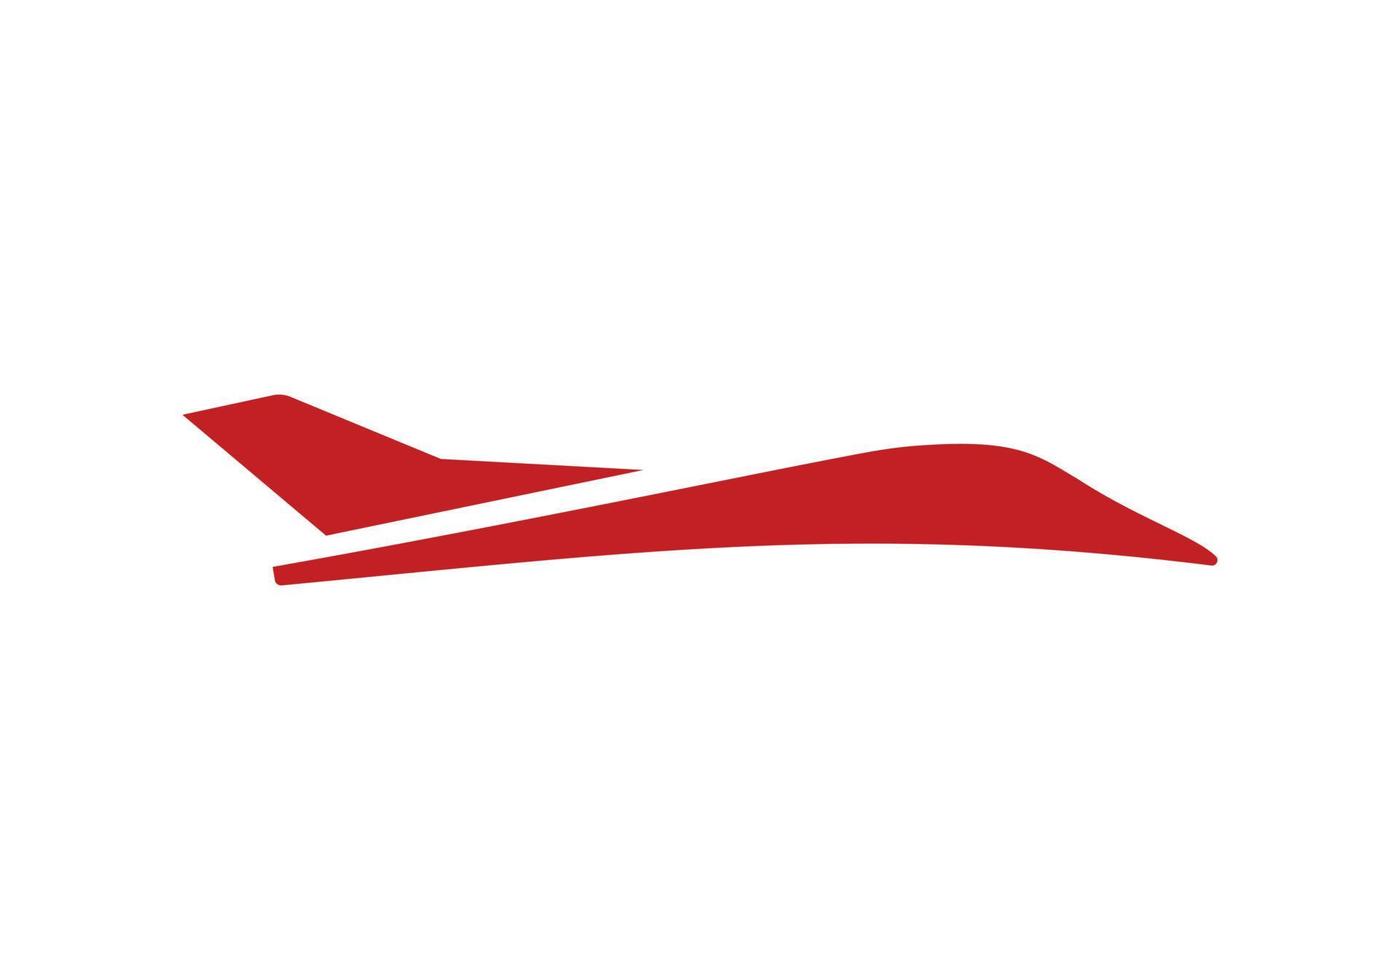 deze is vliegend vogelstand logo ontwerp voor uw bedrijf vector